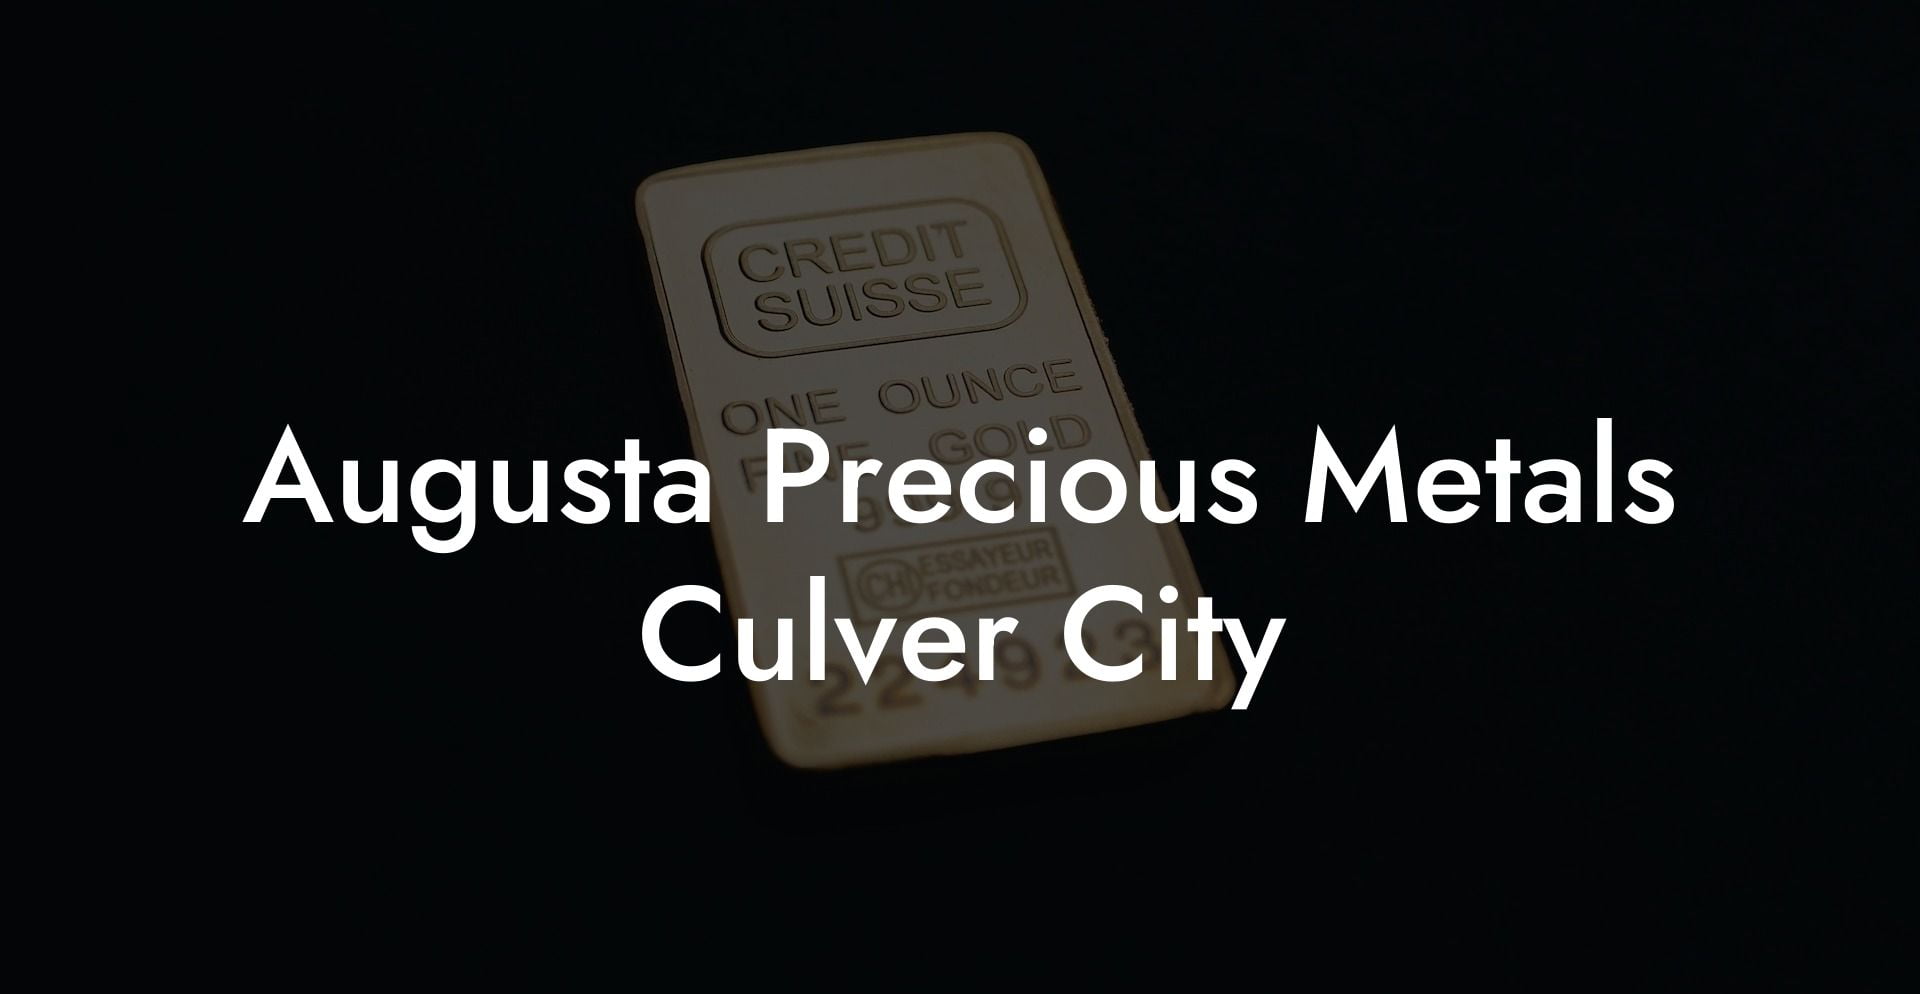 Augusta Precious Metals Culver City